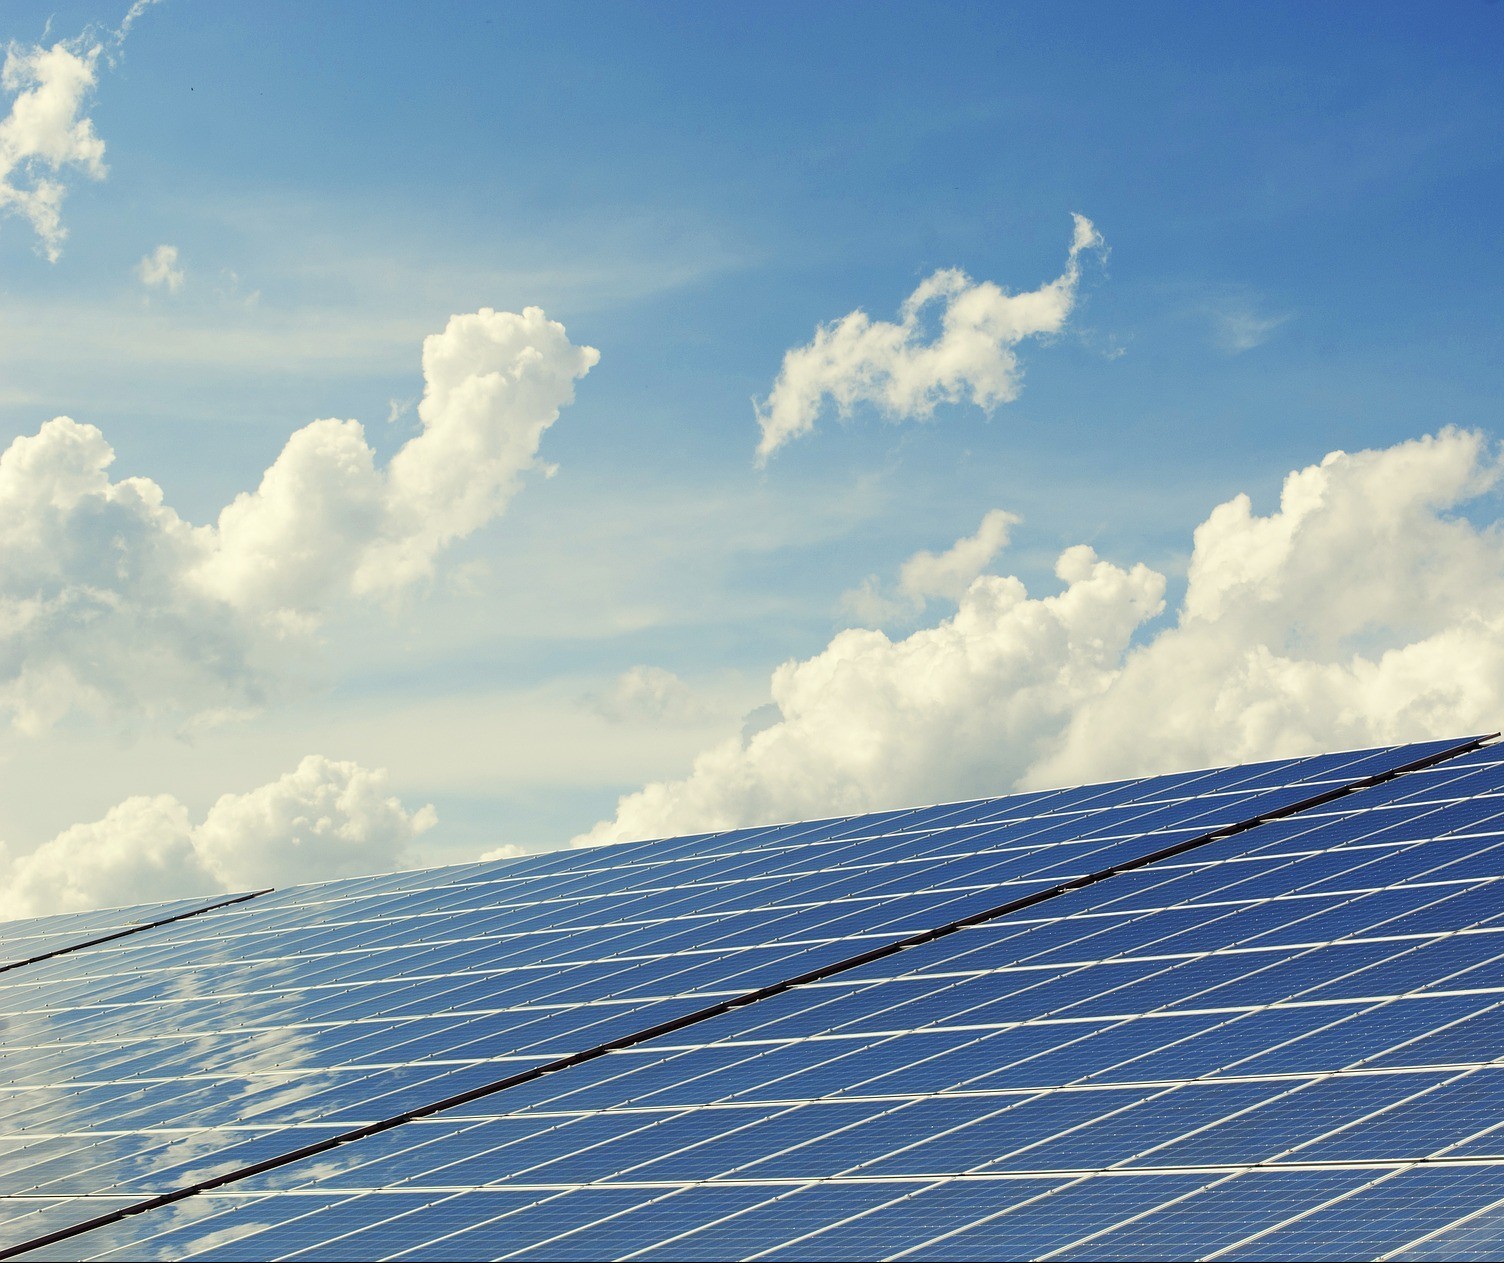 Obras com placas fotovoltaicas são cada vez mais comuns